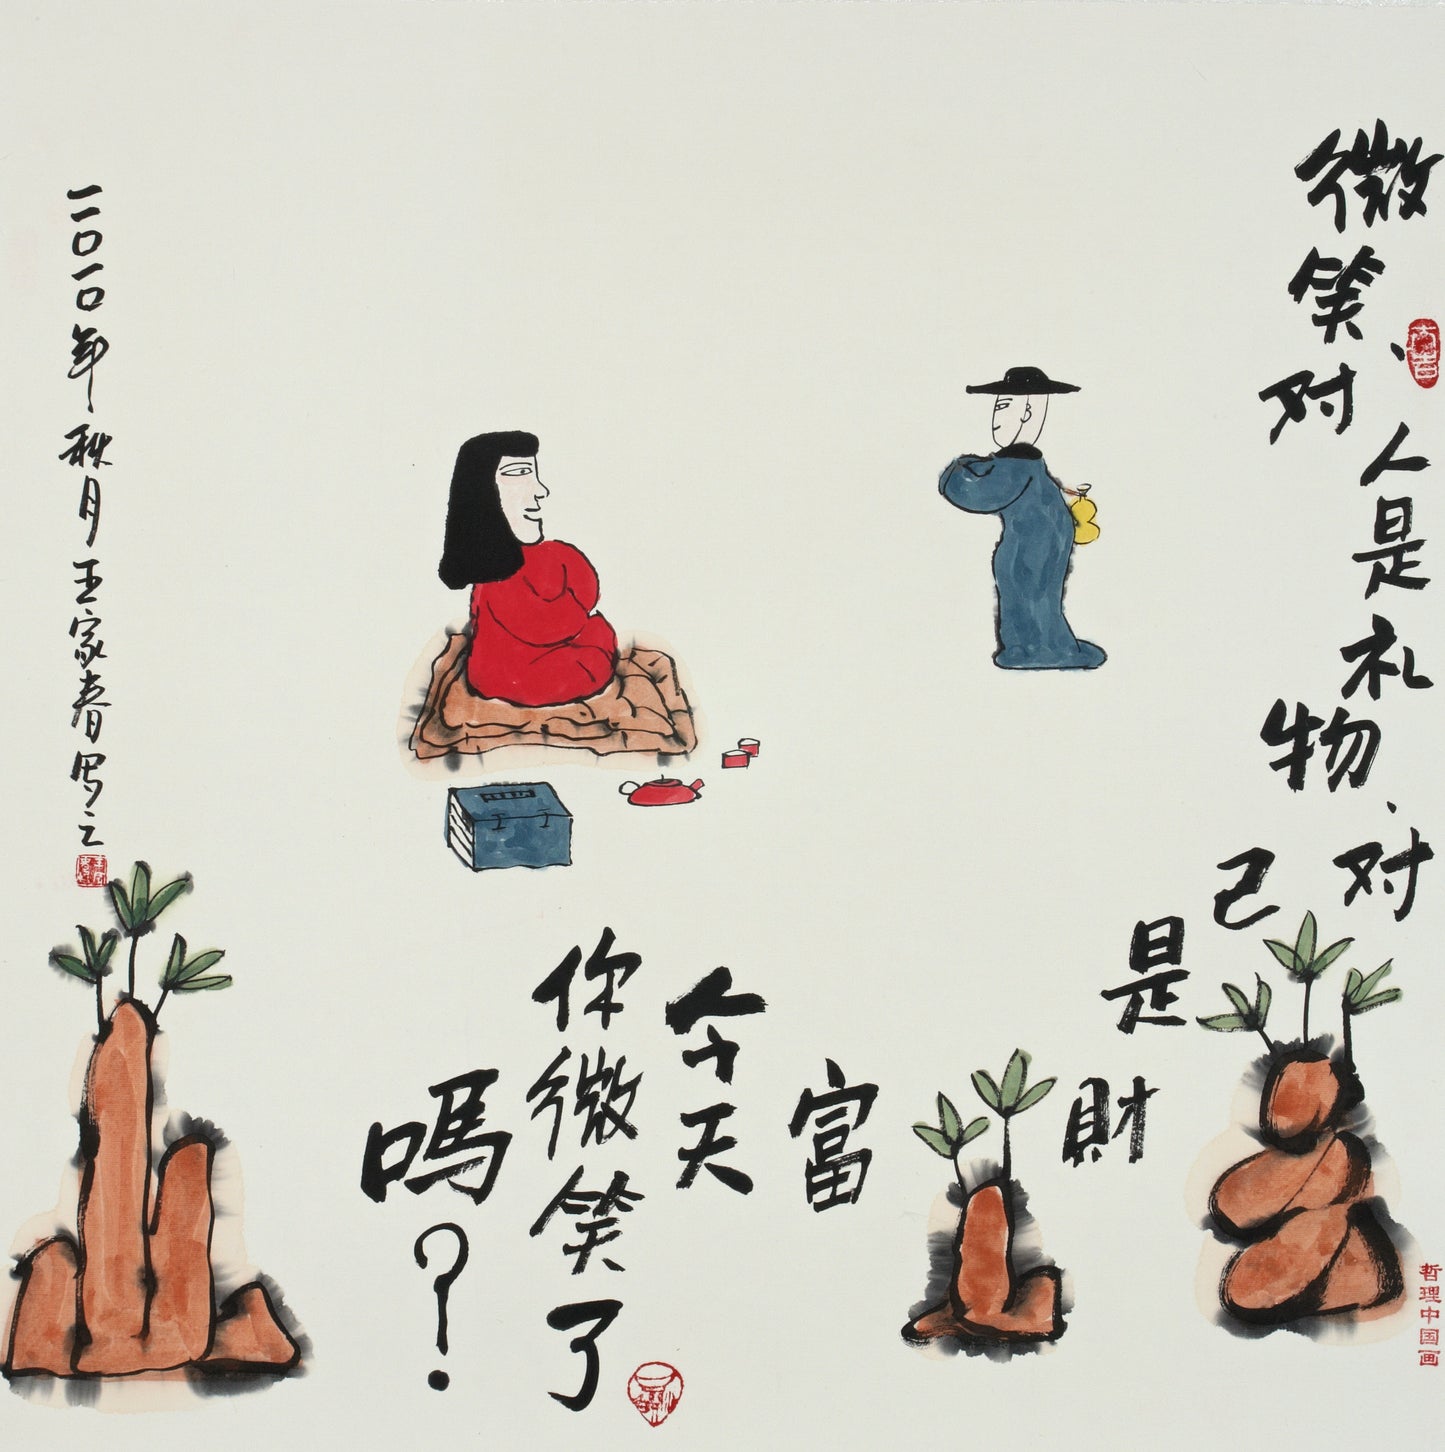 【数藏元】哲理中国画系列数字藏品王家春《微笑是礼物和财富》展品勿拍